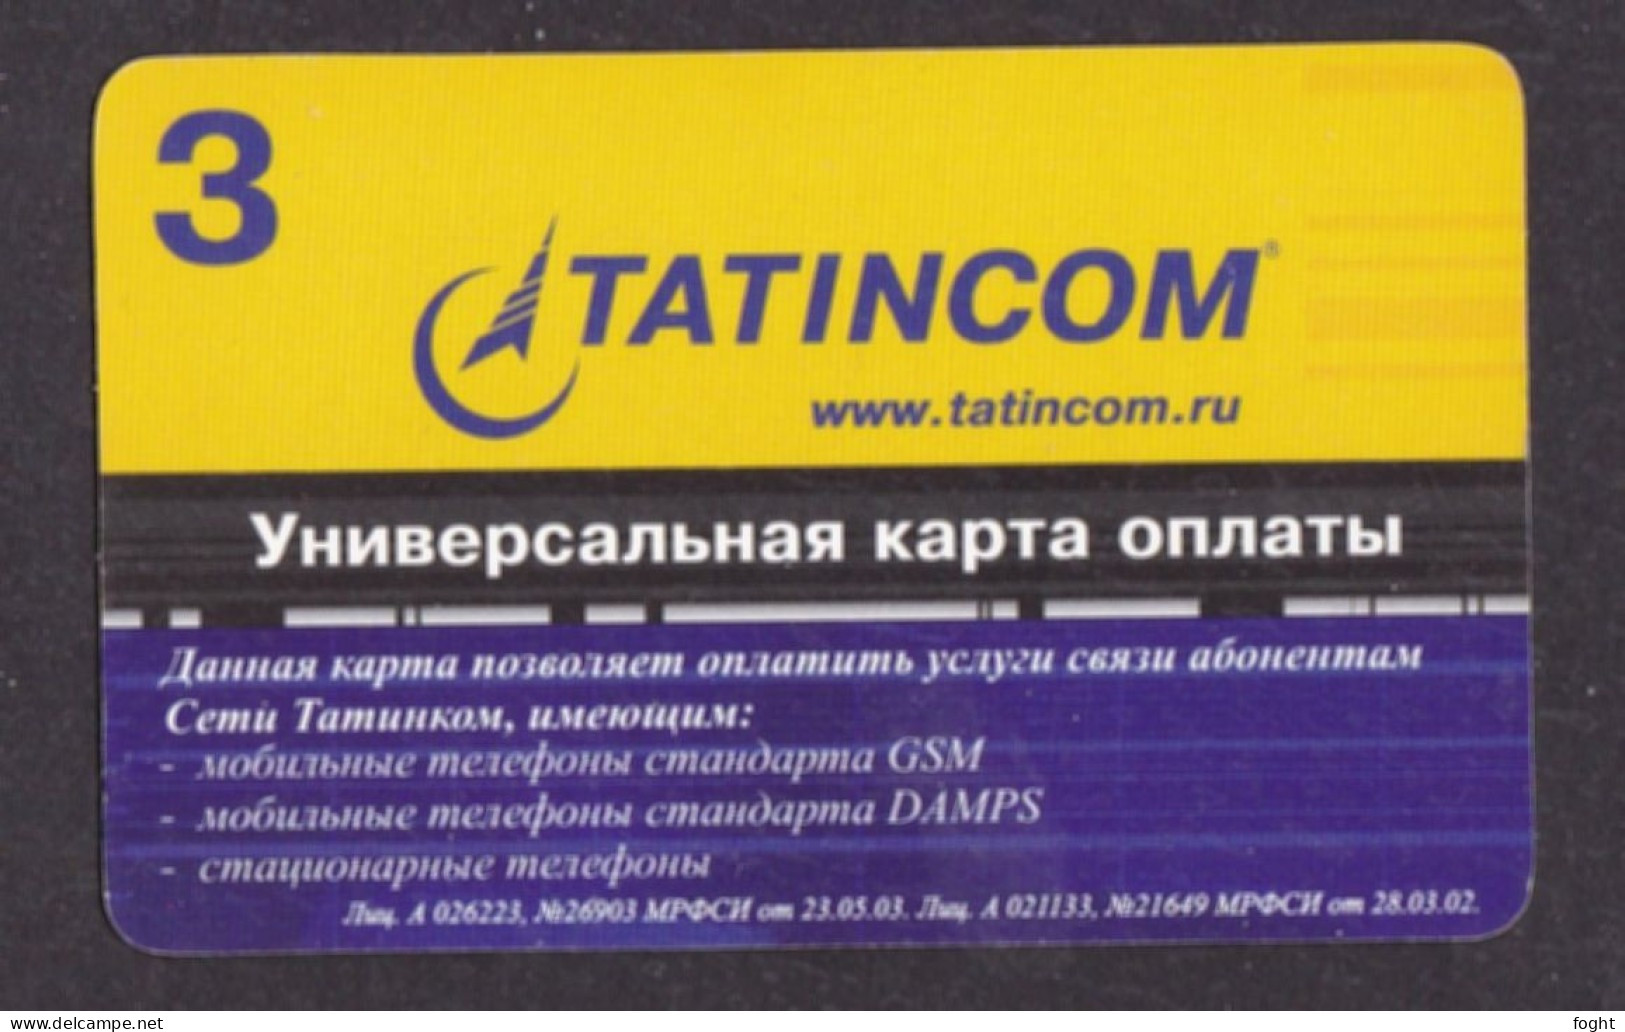 2005 Russia, Phonecard ›Tatincom 3 Roubles,Col:RU-TTC-REF-0001 - Russland